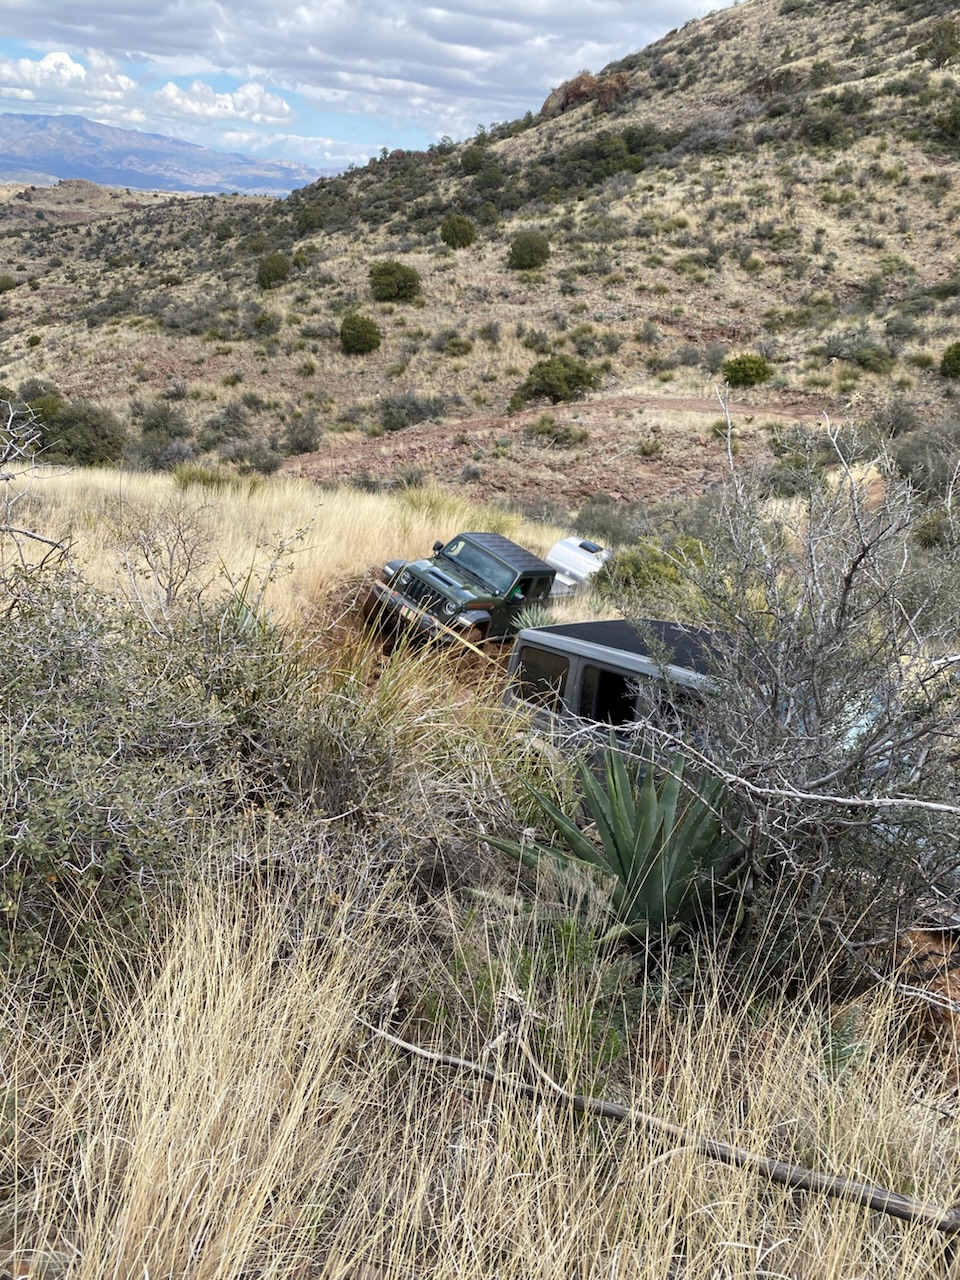 Jeep Gladiator Aravaipa Canyon, AZ with Gladiator Mojave and trailer in tow DFD83F7A-041F-46DE-BD5C-276D83CD53E2